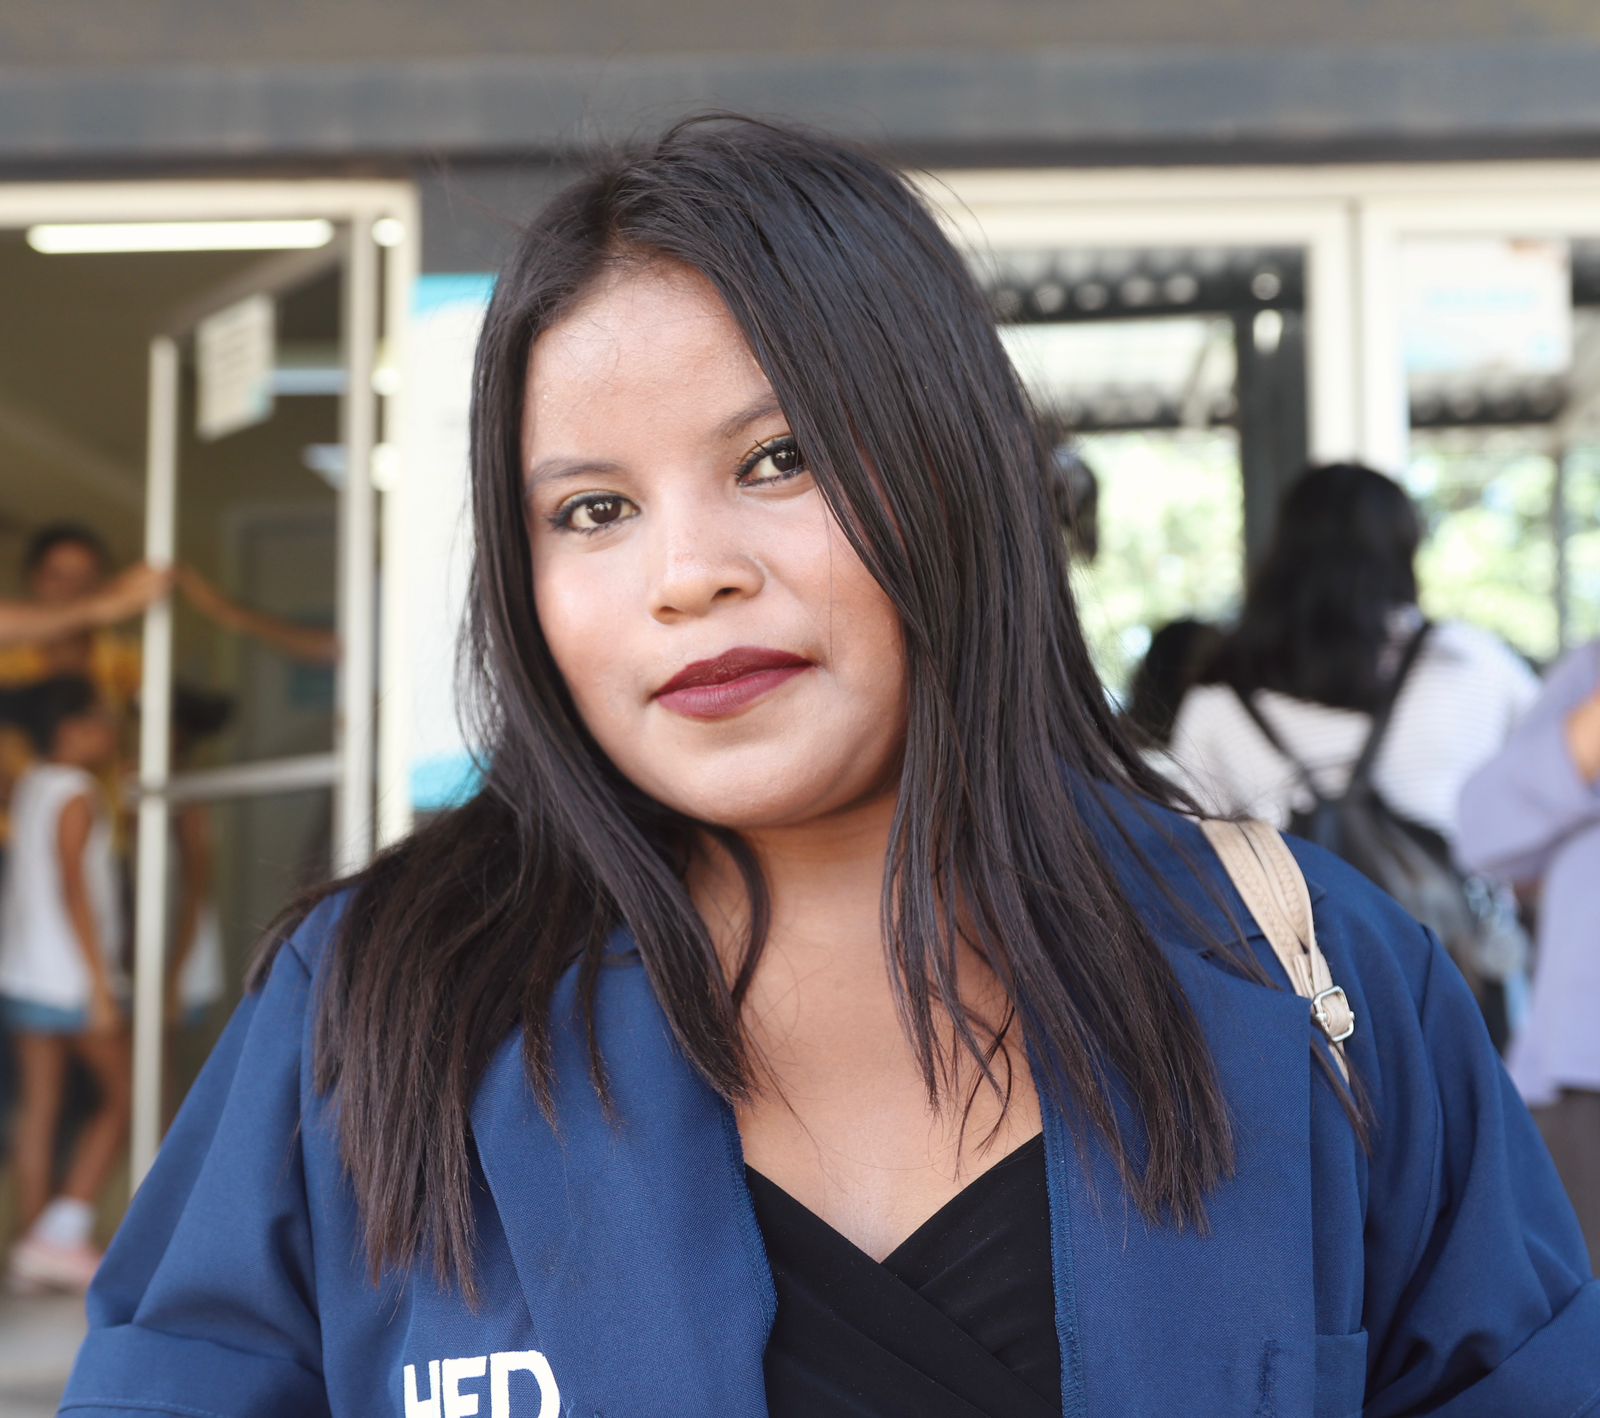 "Ya me había afiliado antes en el primer trabajo. Pero ahora tengo un nuevo empleo y por eso vengo a actualizar mis datos", dijo Odilia de Fiallos, derechohabiente.